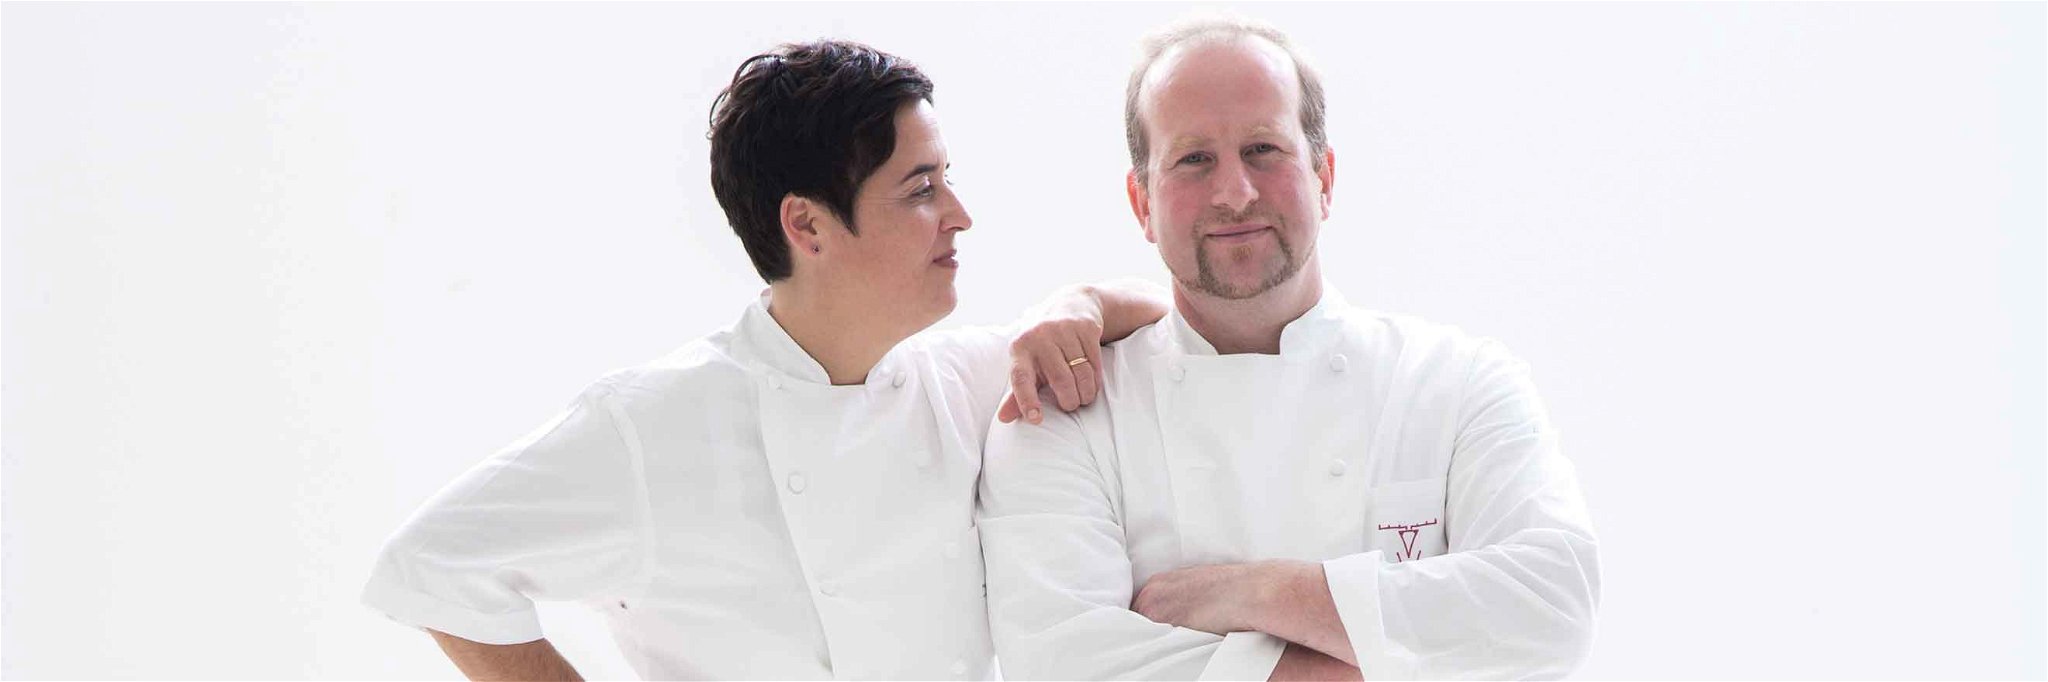 Douce Steiner ist eine der besten Köchinnen des Landes, in der Küche steht sie mit Ehemann Udo Weiler.